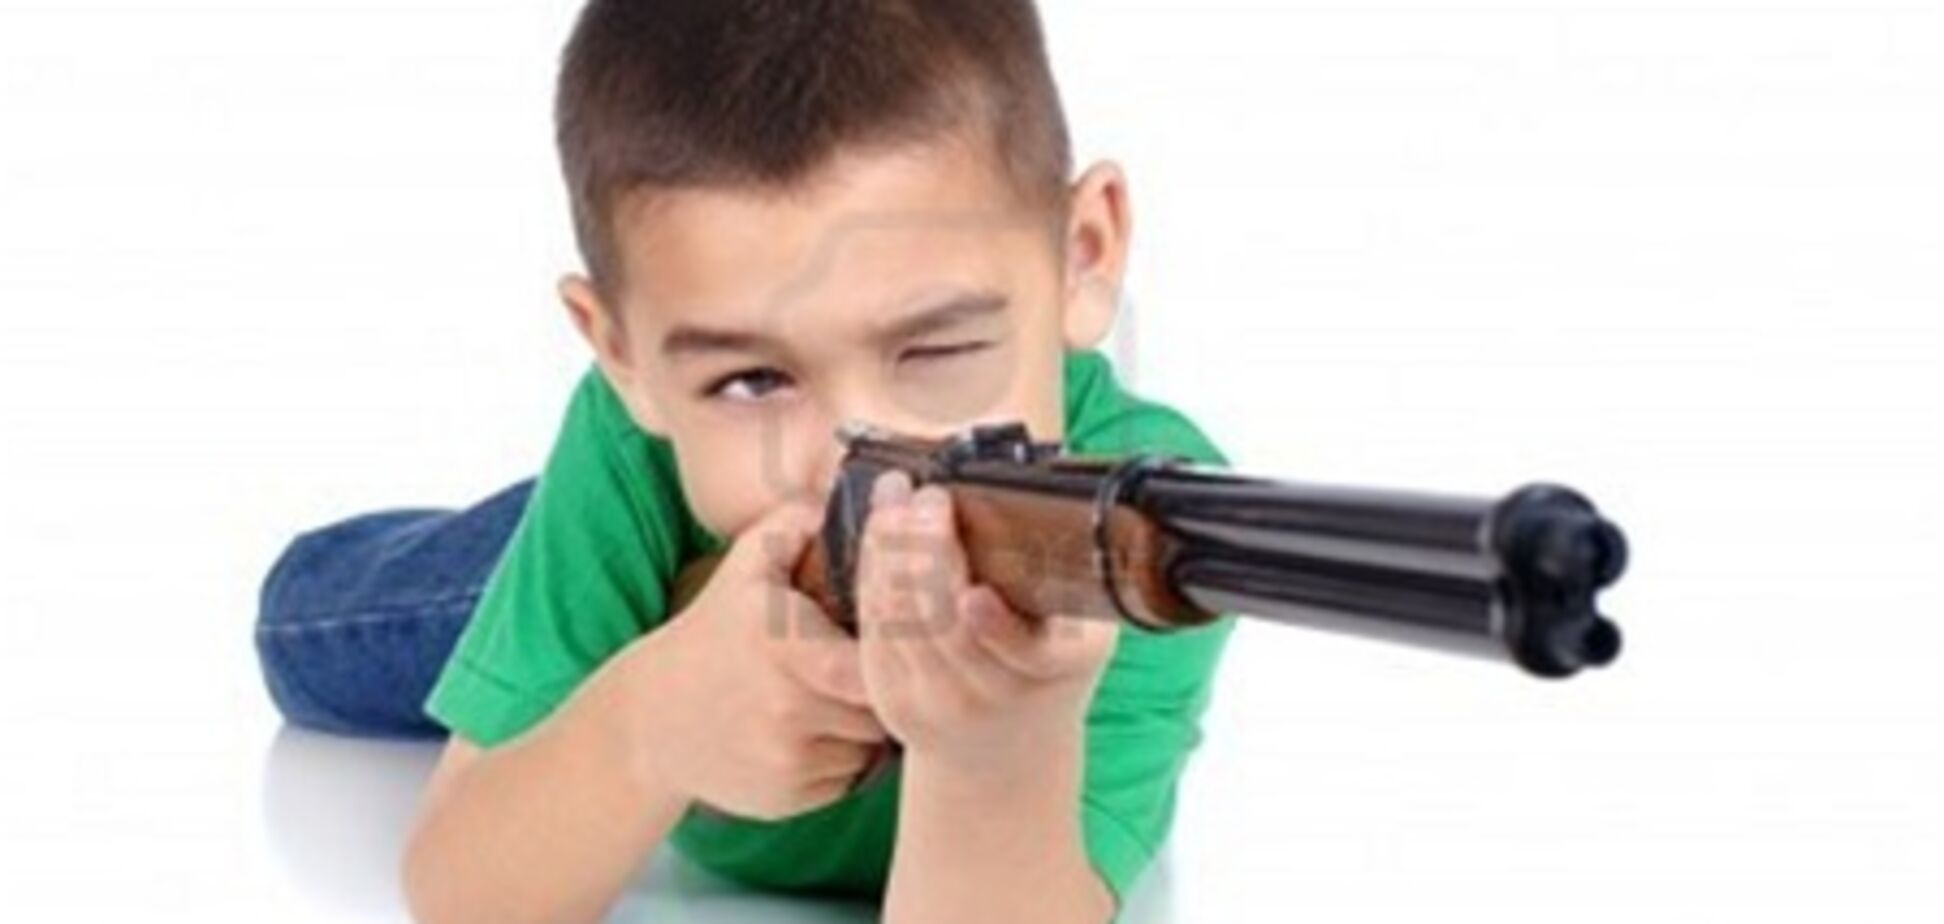 Десятирічний хлопчик, погрожуючи гвинтівкою, відняв гроші у дівчинки